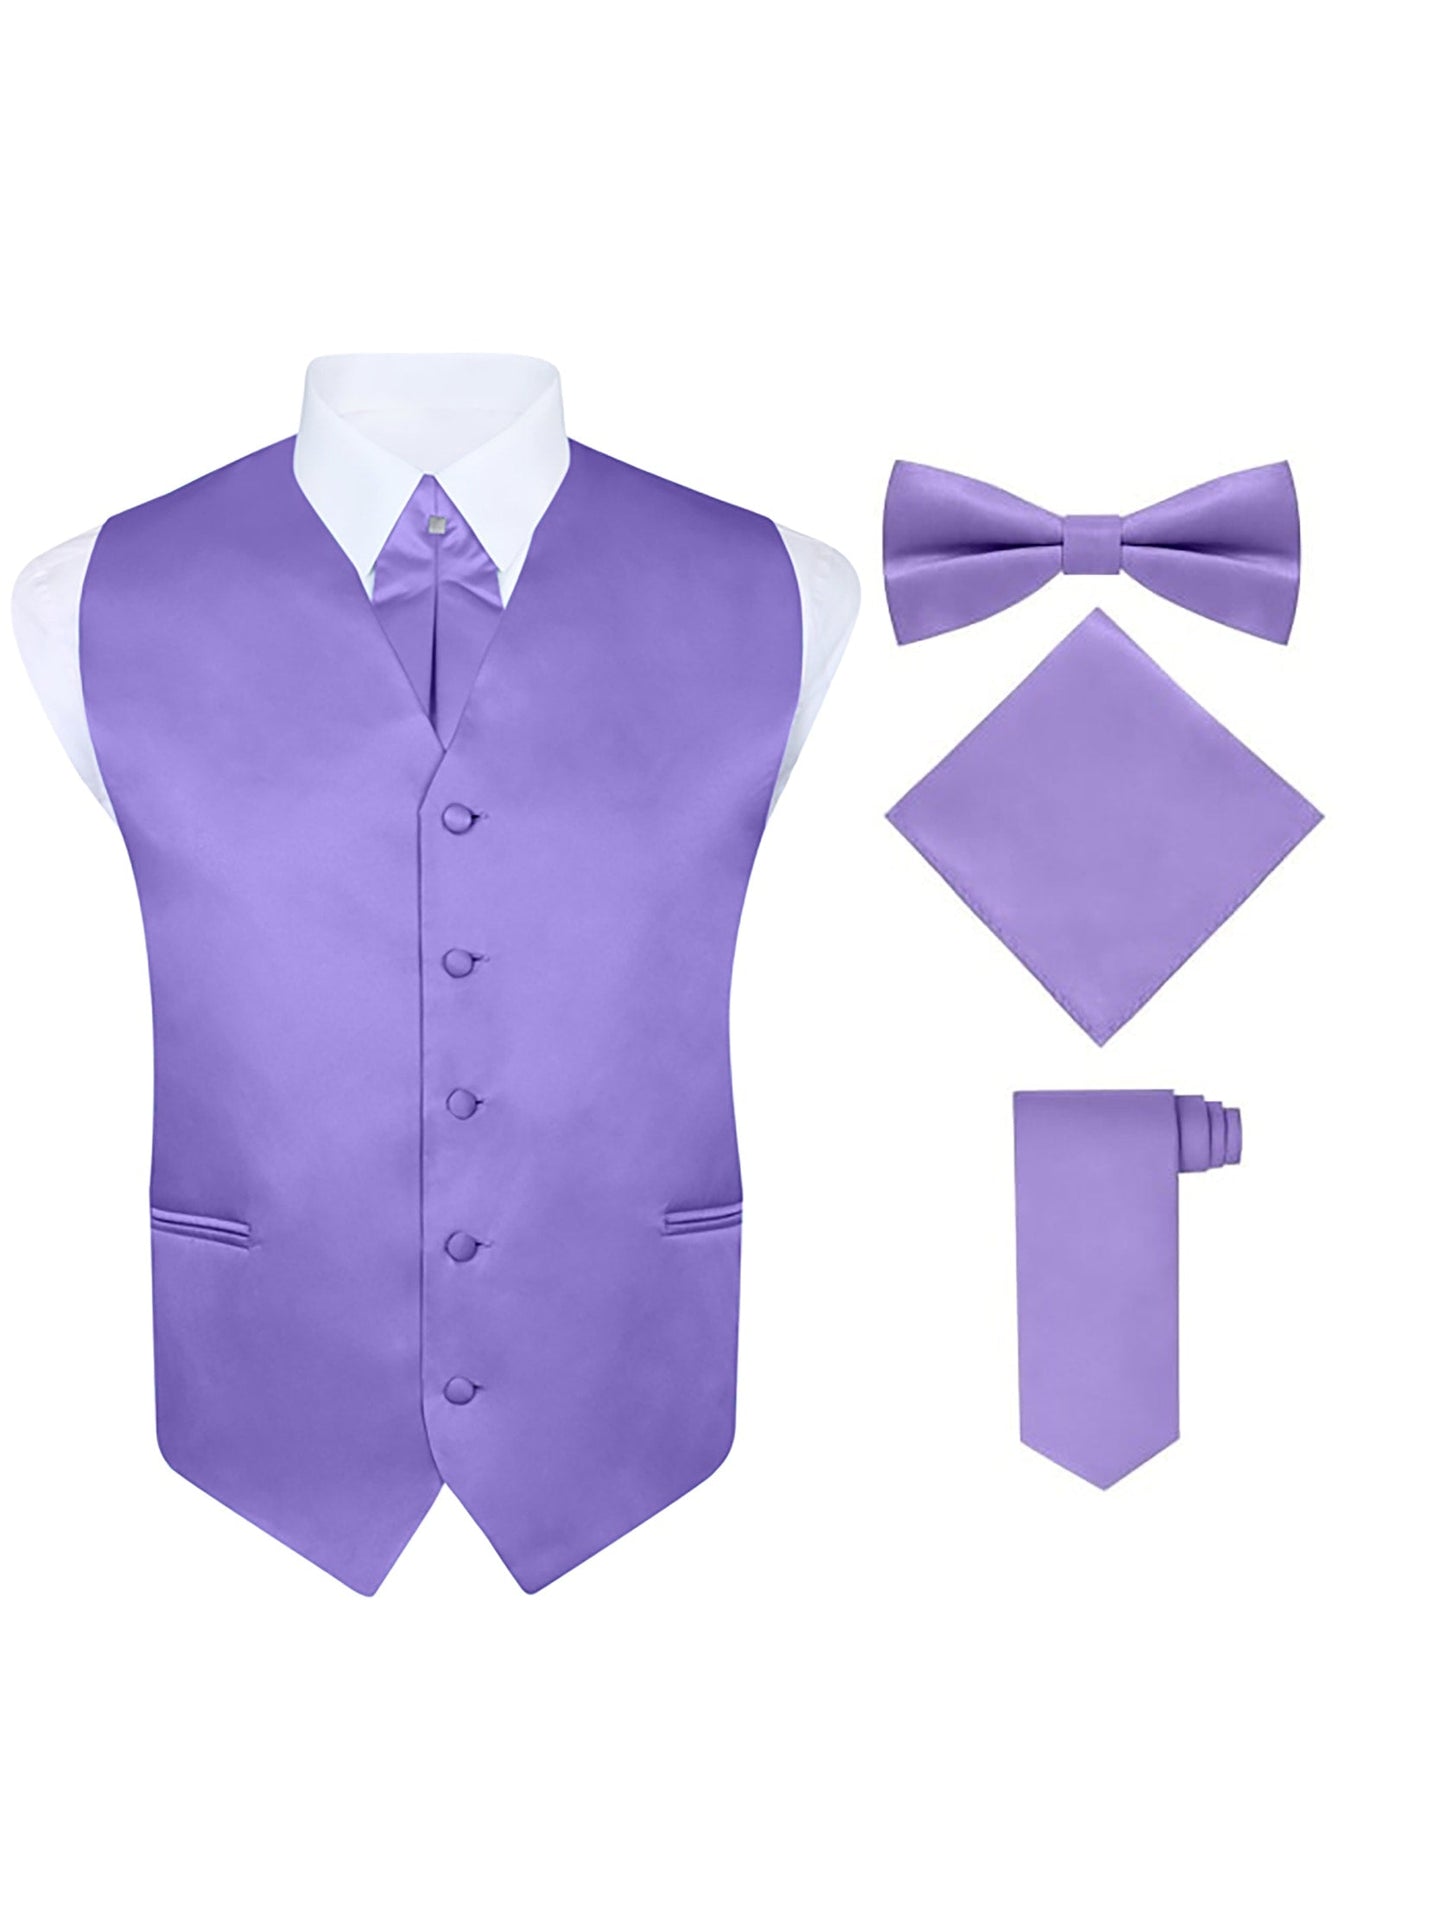 S.H. Churchill & Co. Men's 5 Piece Vest Set, with Cravat, Bow Tie, Neck Tie & Pocket Hanky-Light Purple